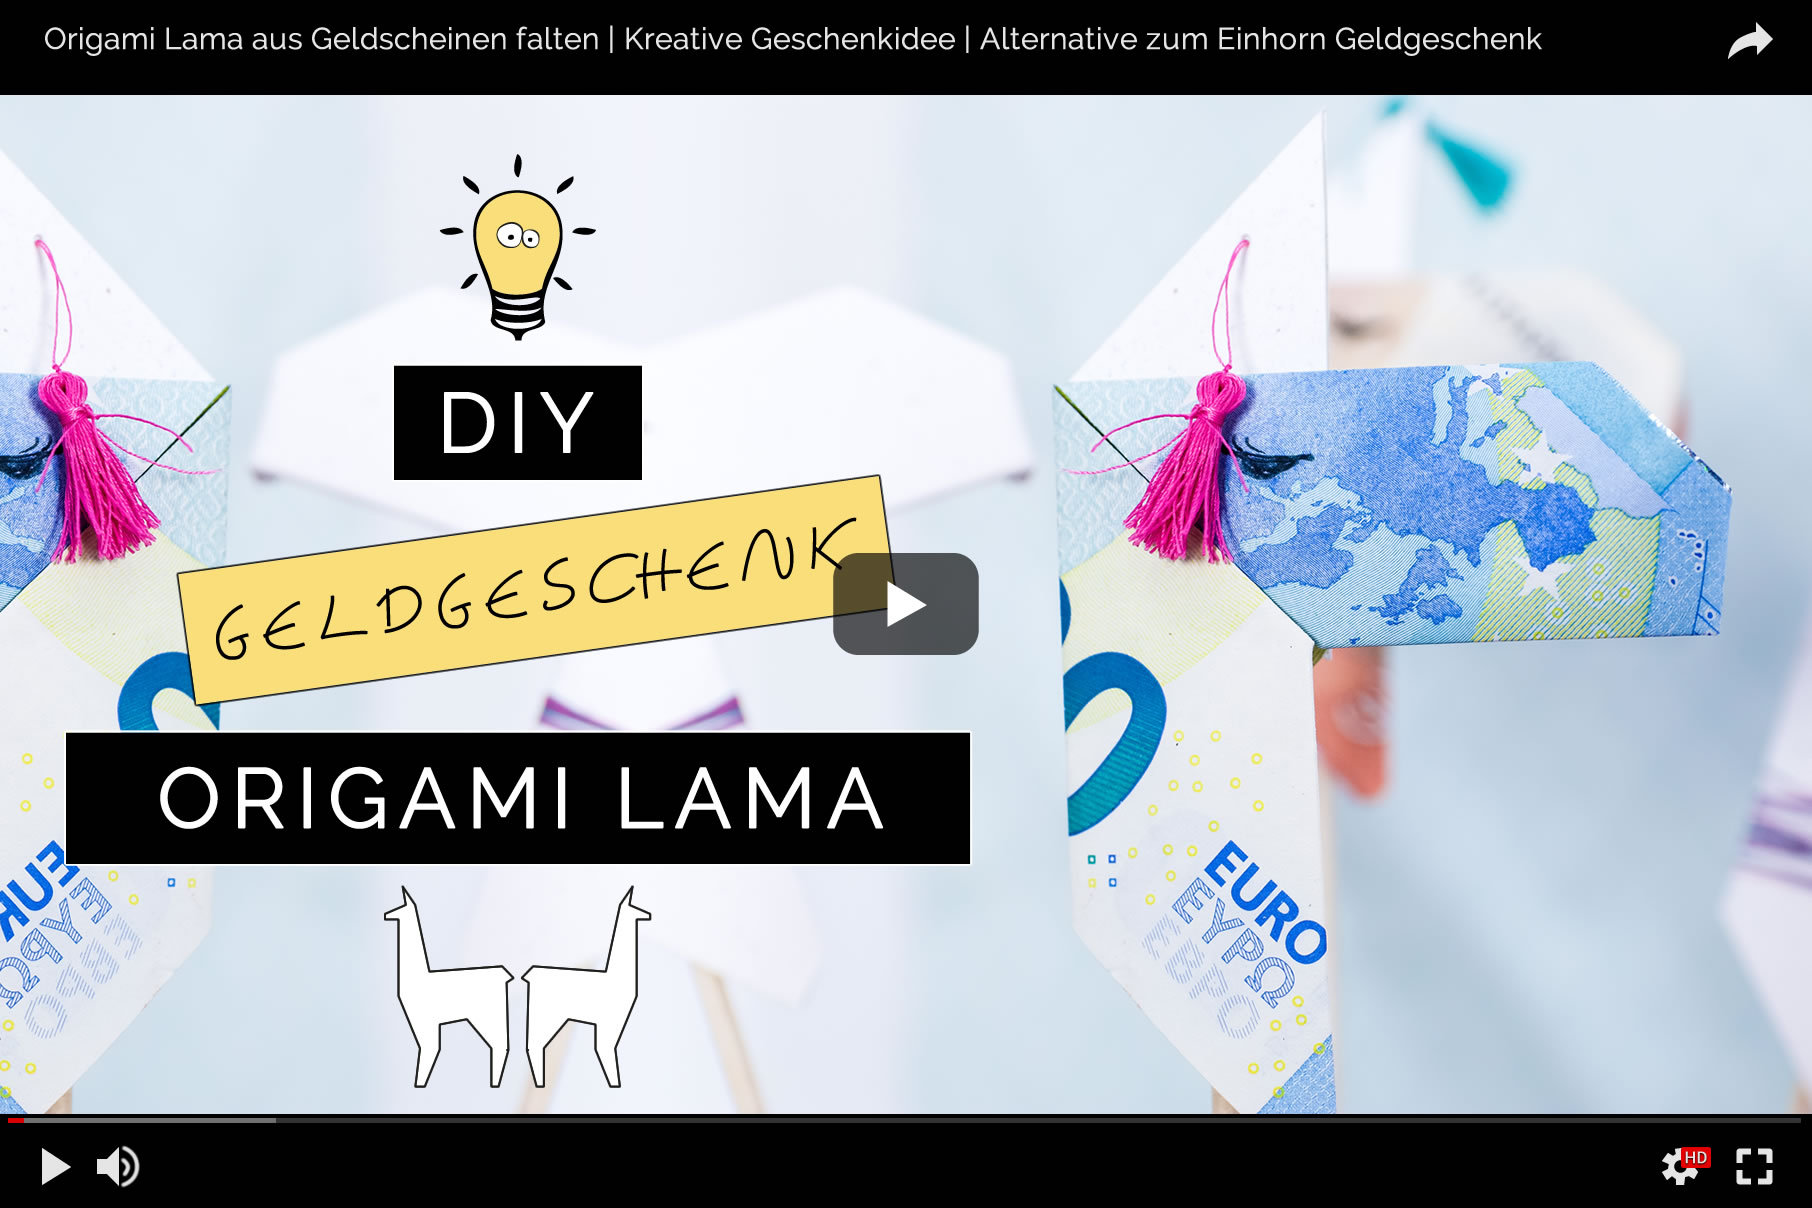 Origami Lamas aus Geldscheinen falten | Kreatives Geldgeschenk zum Geburtstag, zur Taufe oder zur Hochzeit | Filizity.com | DIY-Blog aus dem Rheinland #geschenkideen #origami #lama